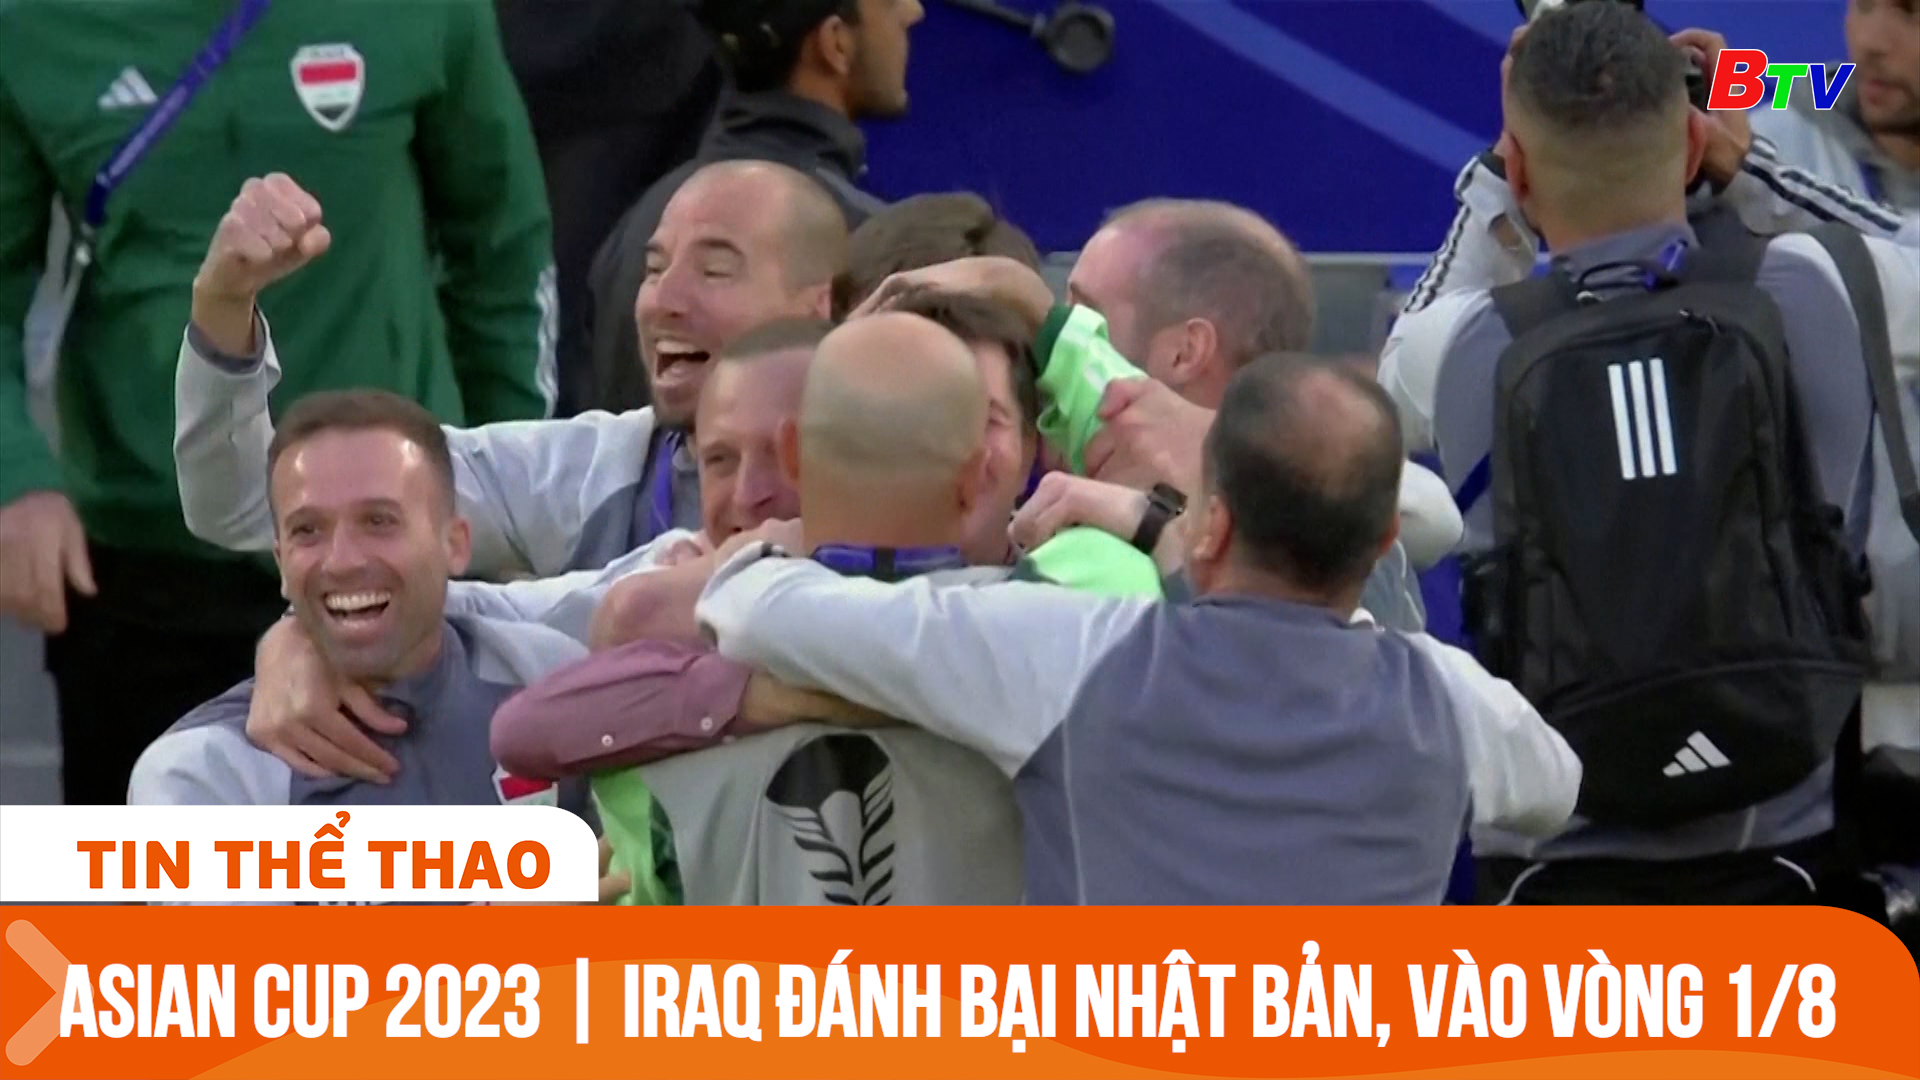 Asian Cup 2023 | Iraq đánh bại Nhật Bản, sớm vào vòng 1/8 | Tin Thể thao 24h	